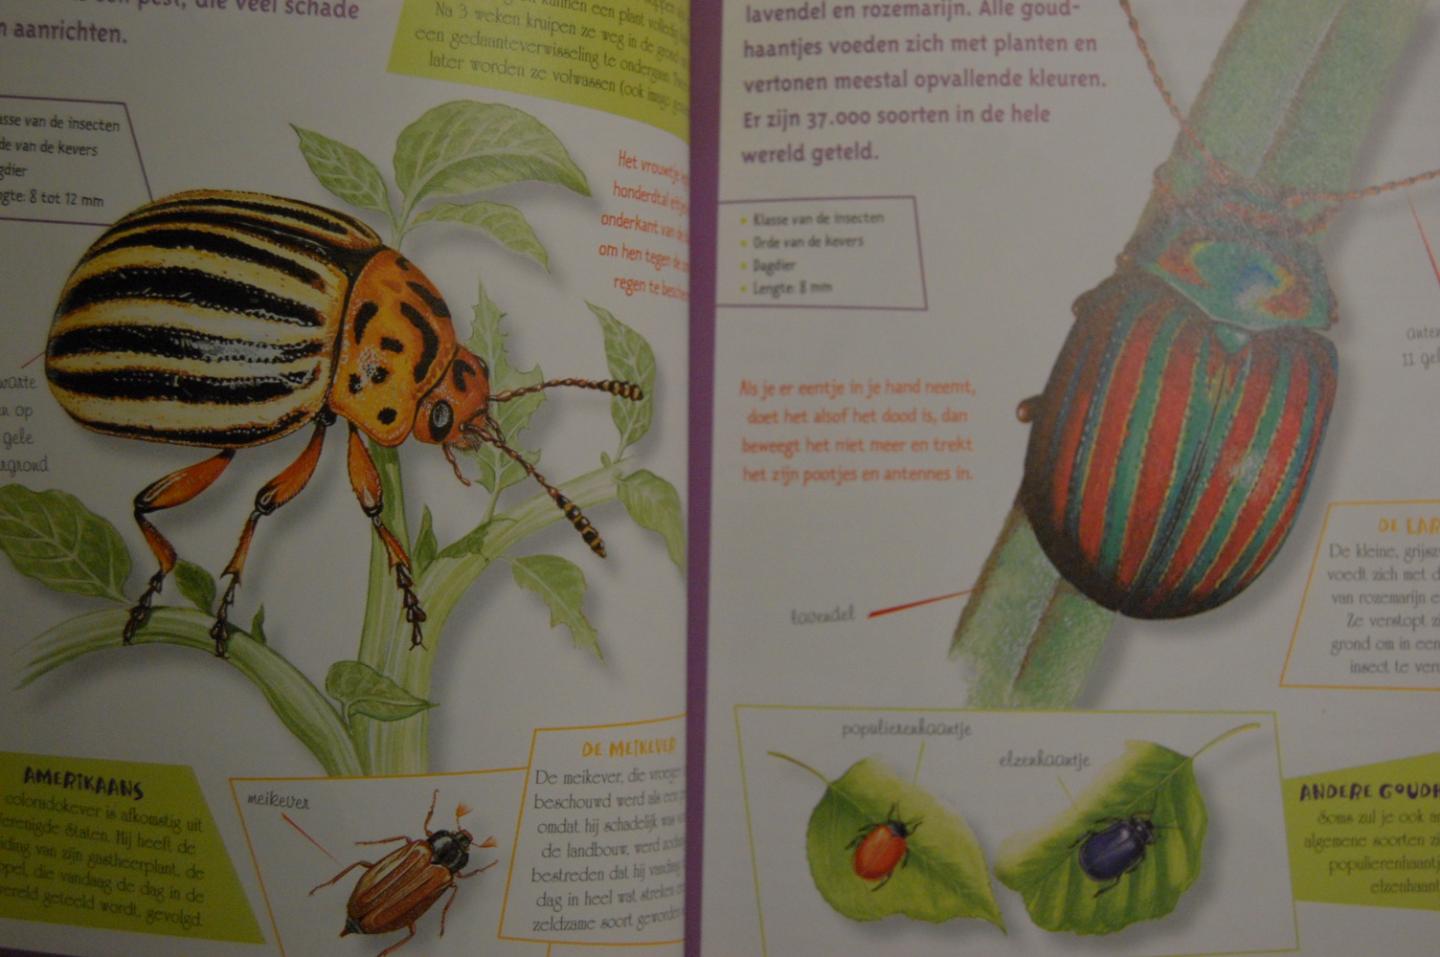 Brin, Antoine& Lionel Valladares - Insectengids voor kids. Welk beestje zit er in mijn insectenkijker?